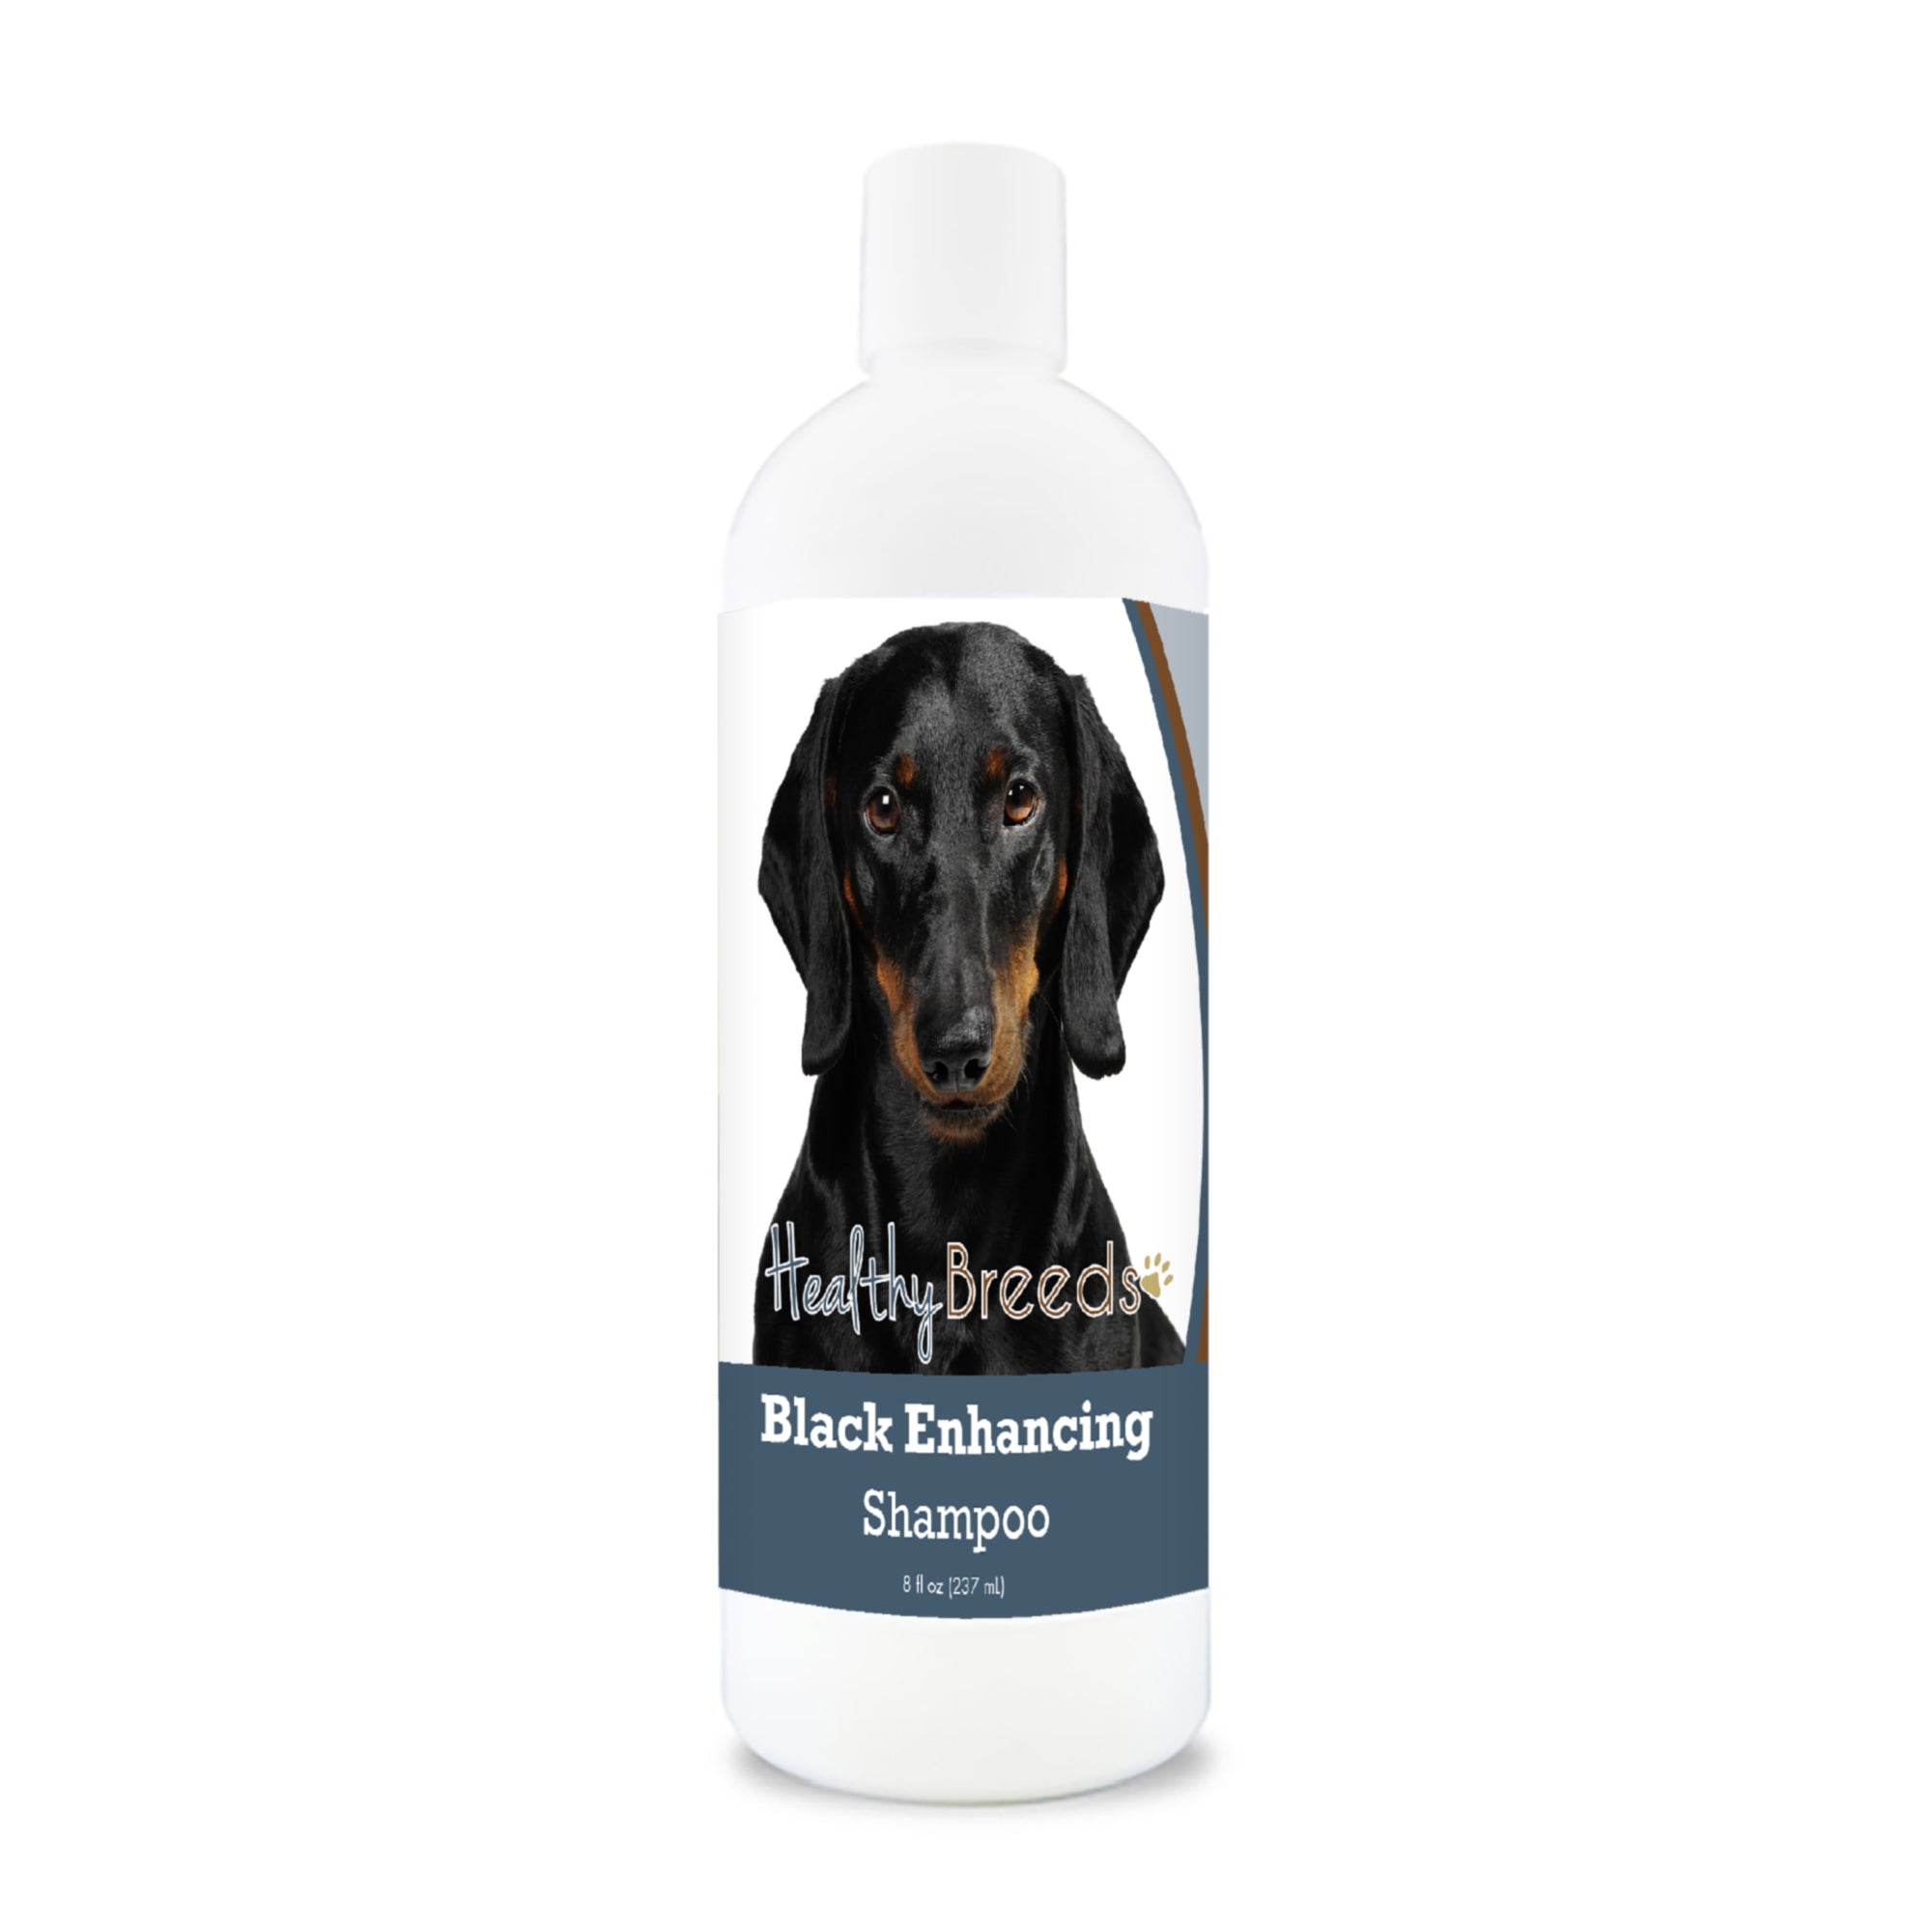 Dachshund Black Enhancing Shampoo 8 oz